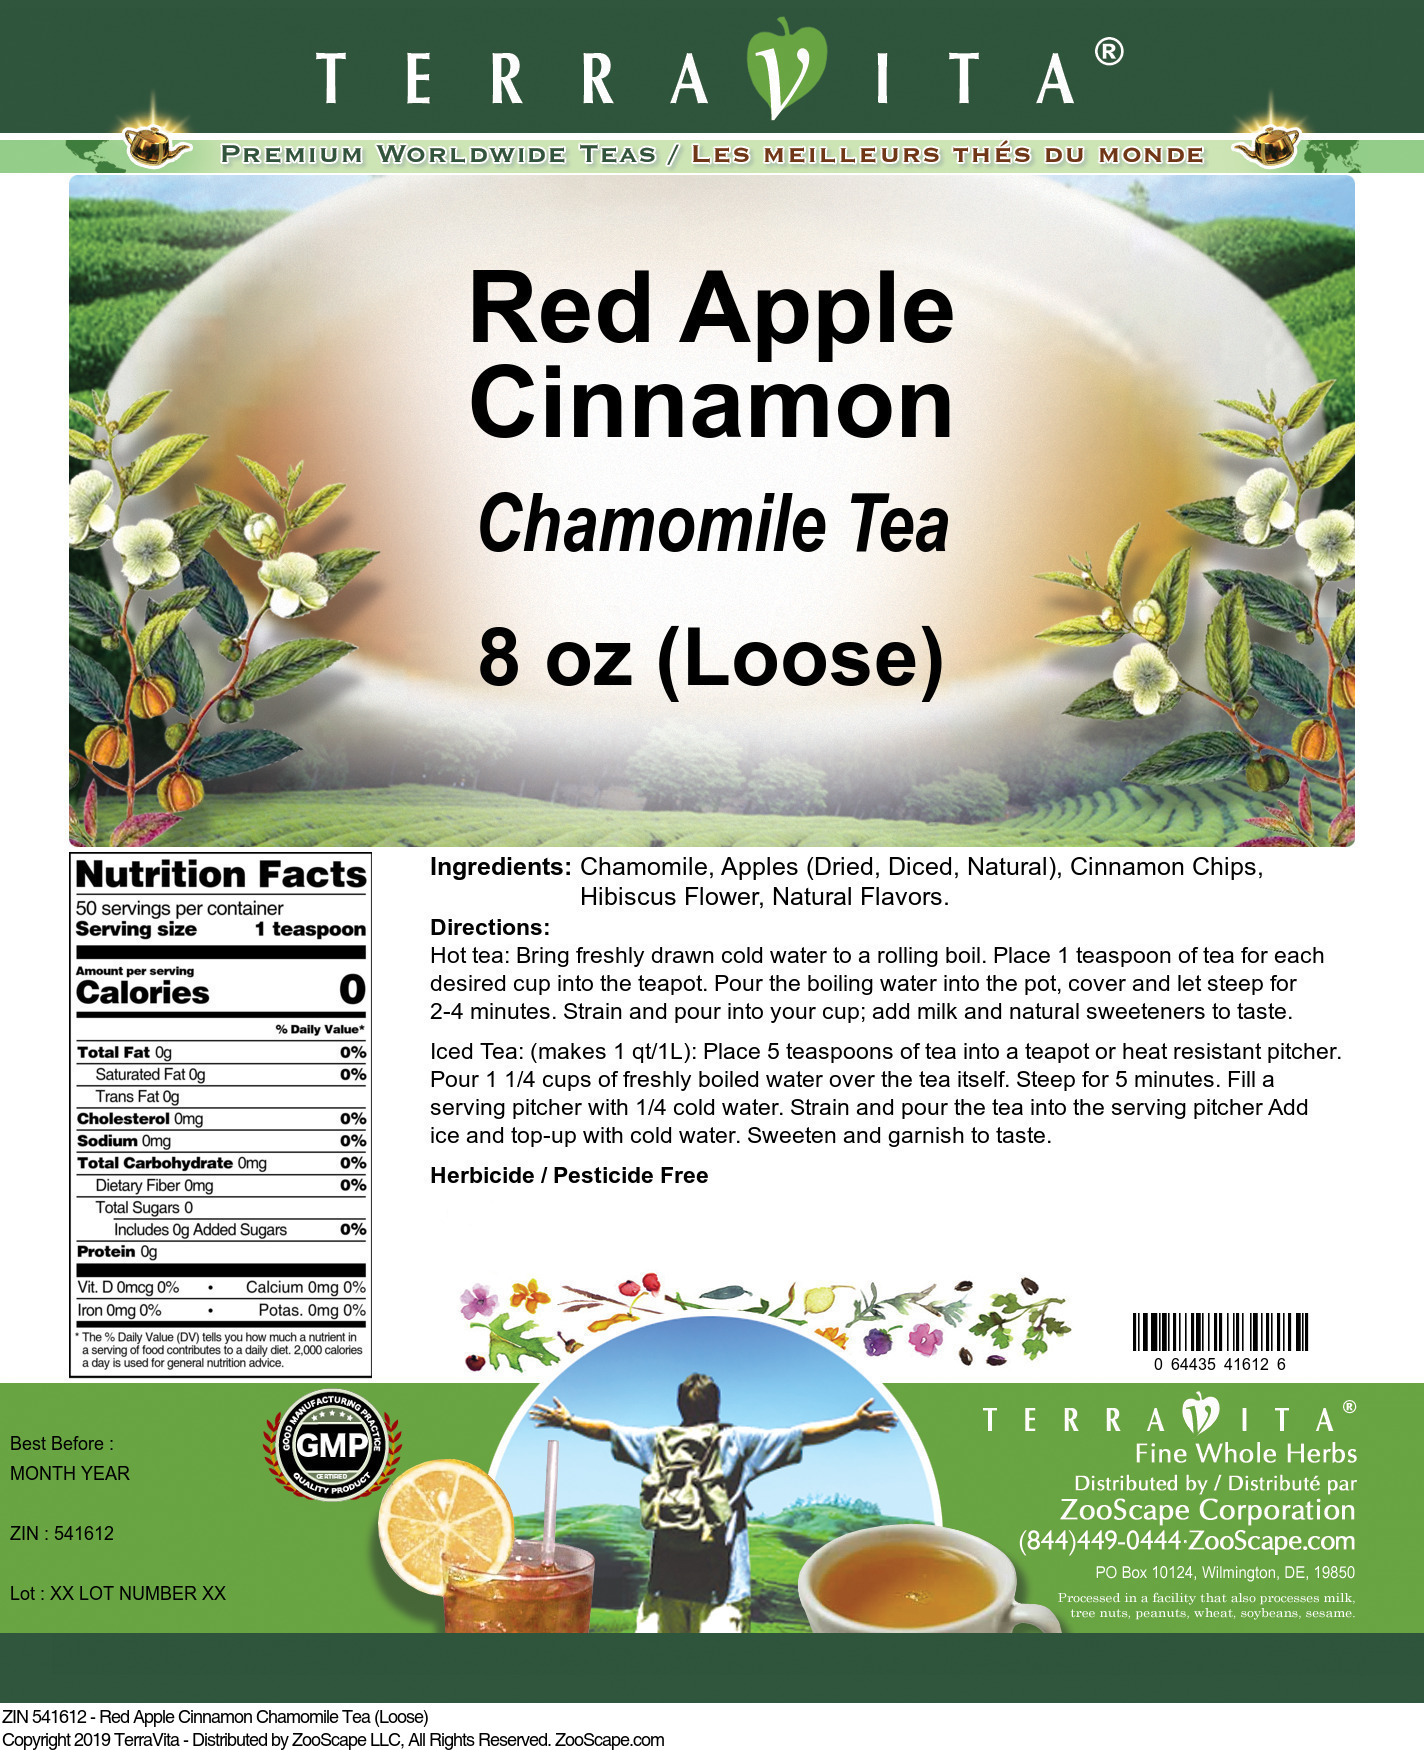 Red Apple Cinnamon Chamomile Tea (Loose) - Label